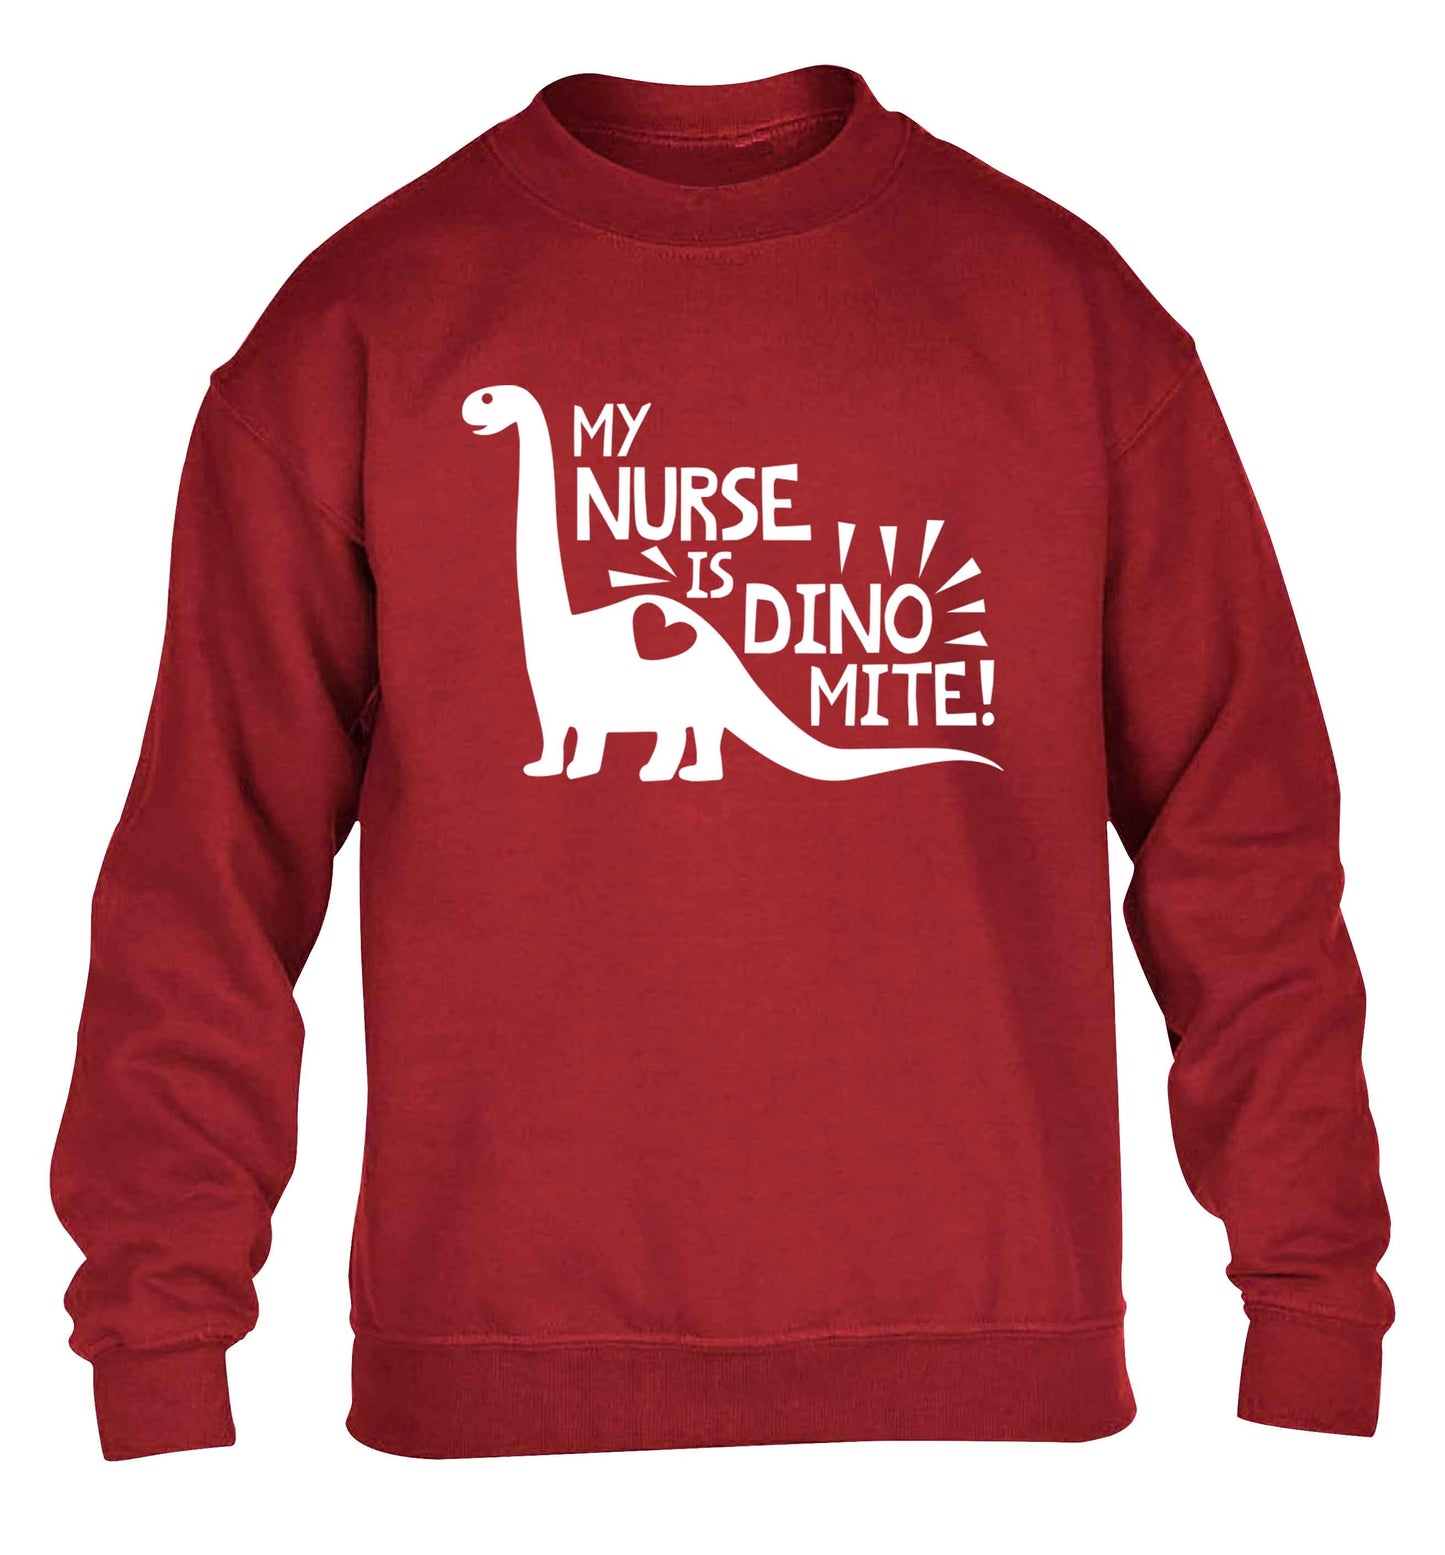 My nurse is dinomite! children's grey sweater 12-13 Years